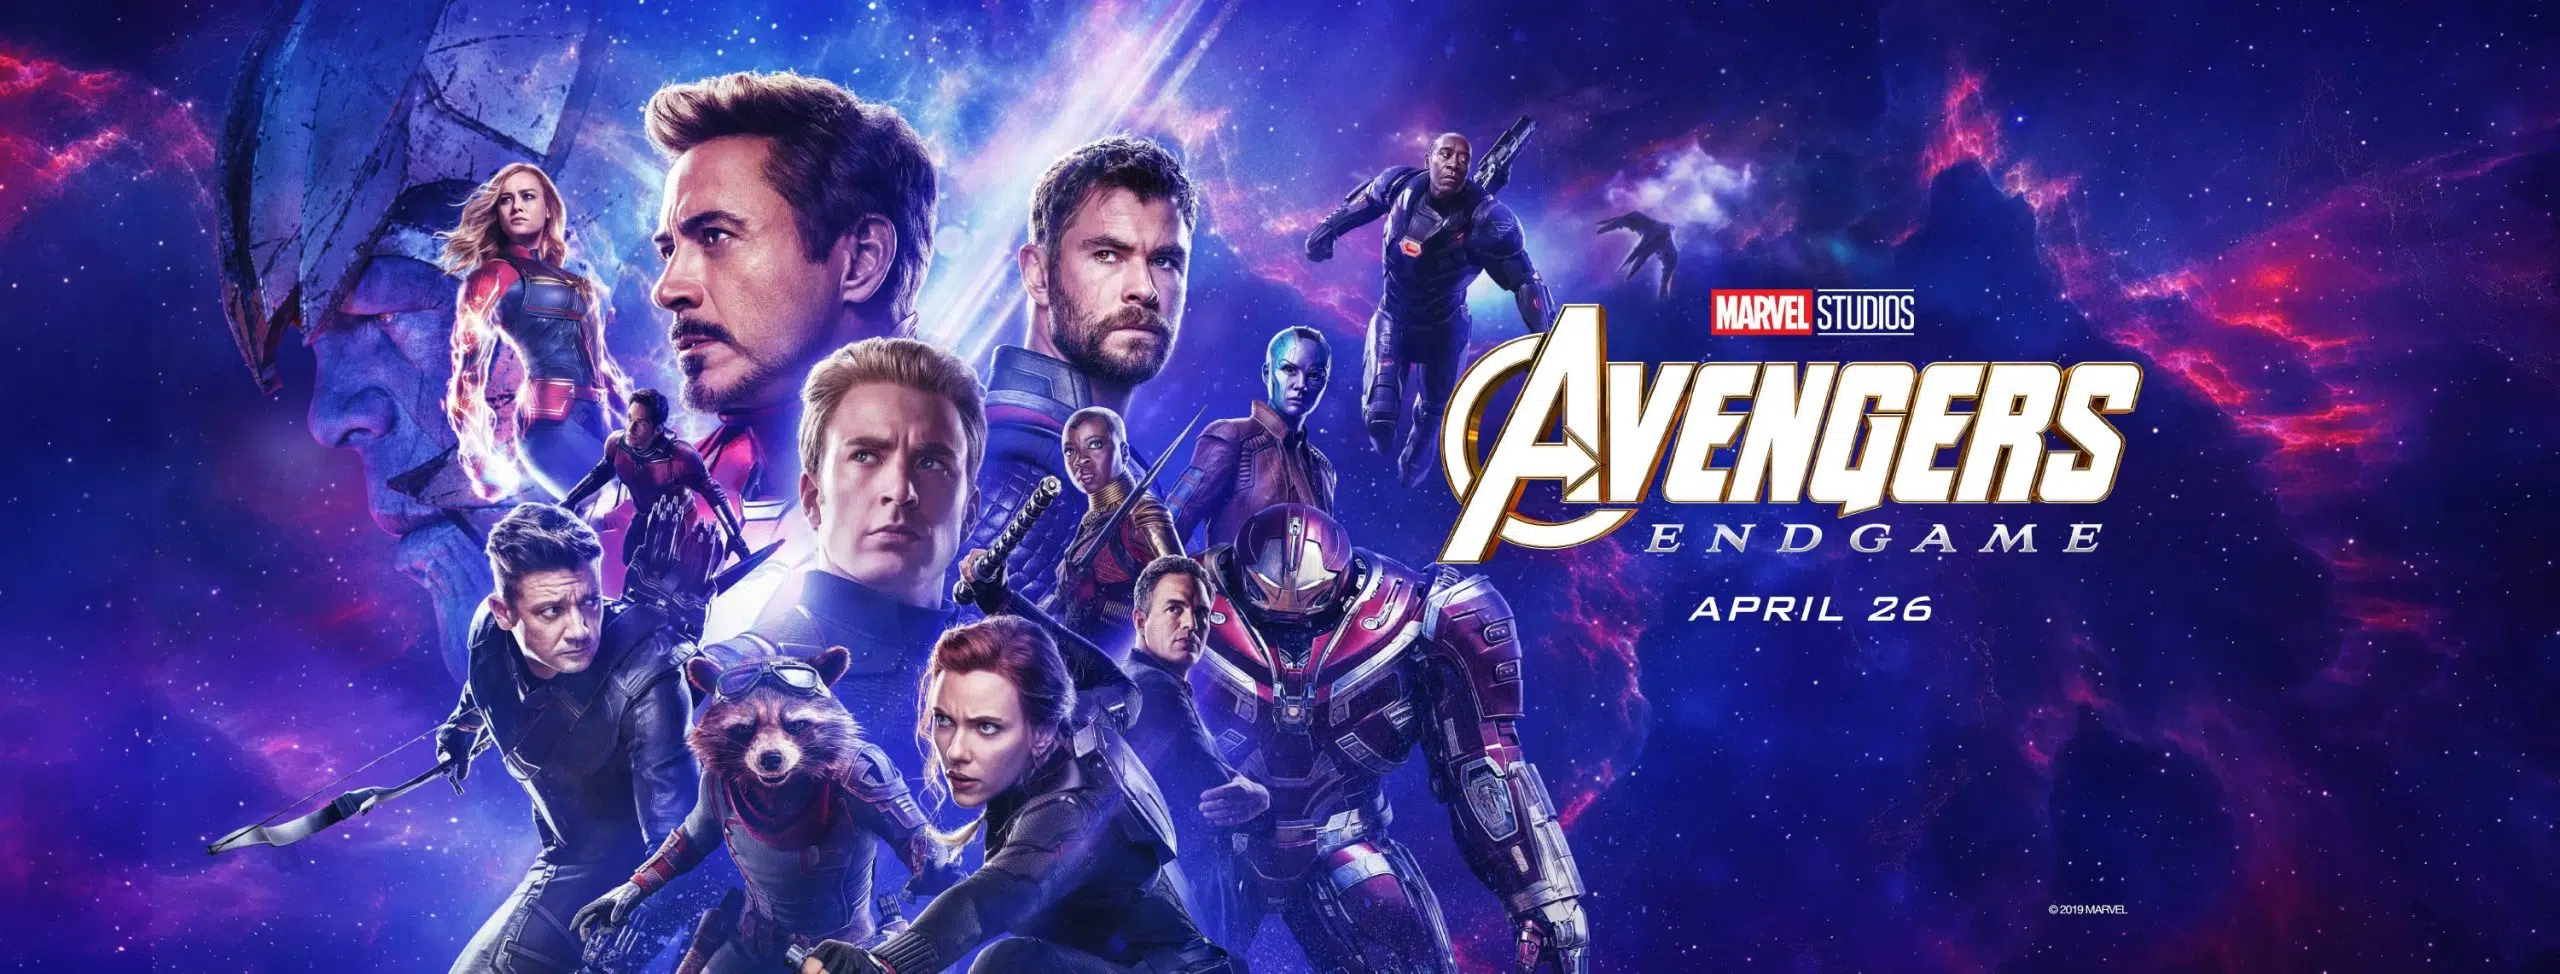 (Film Clip) Marvel Studios’ Avengers: Endgame